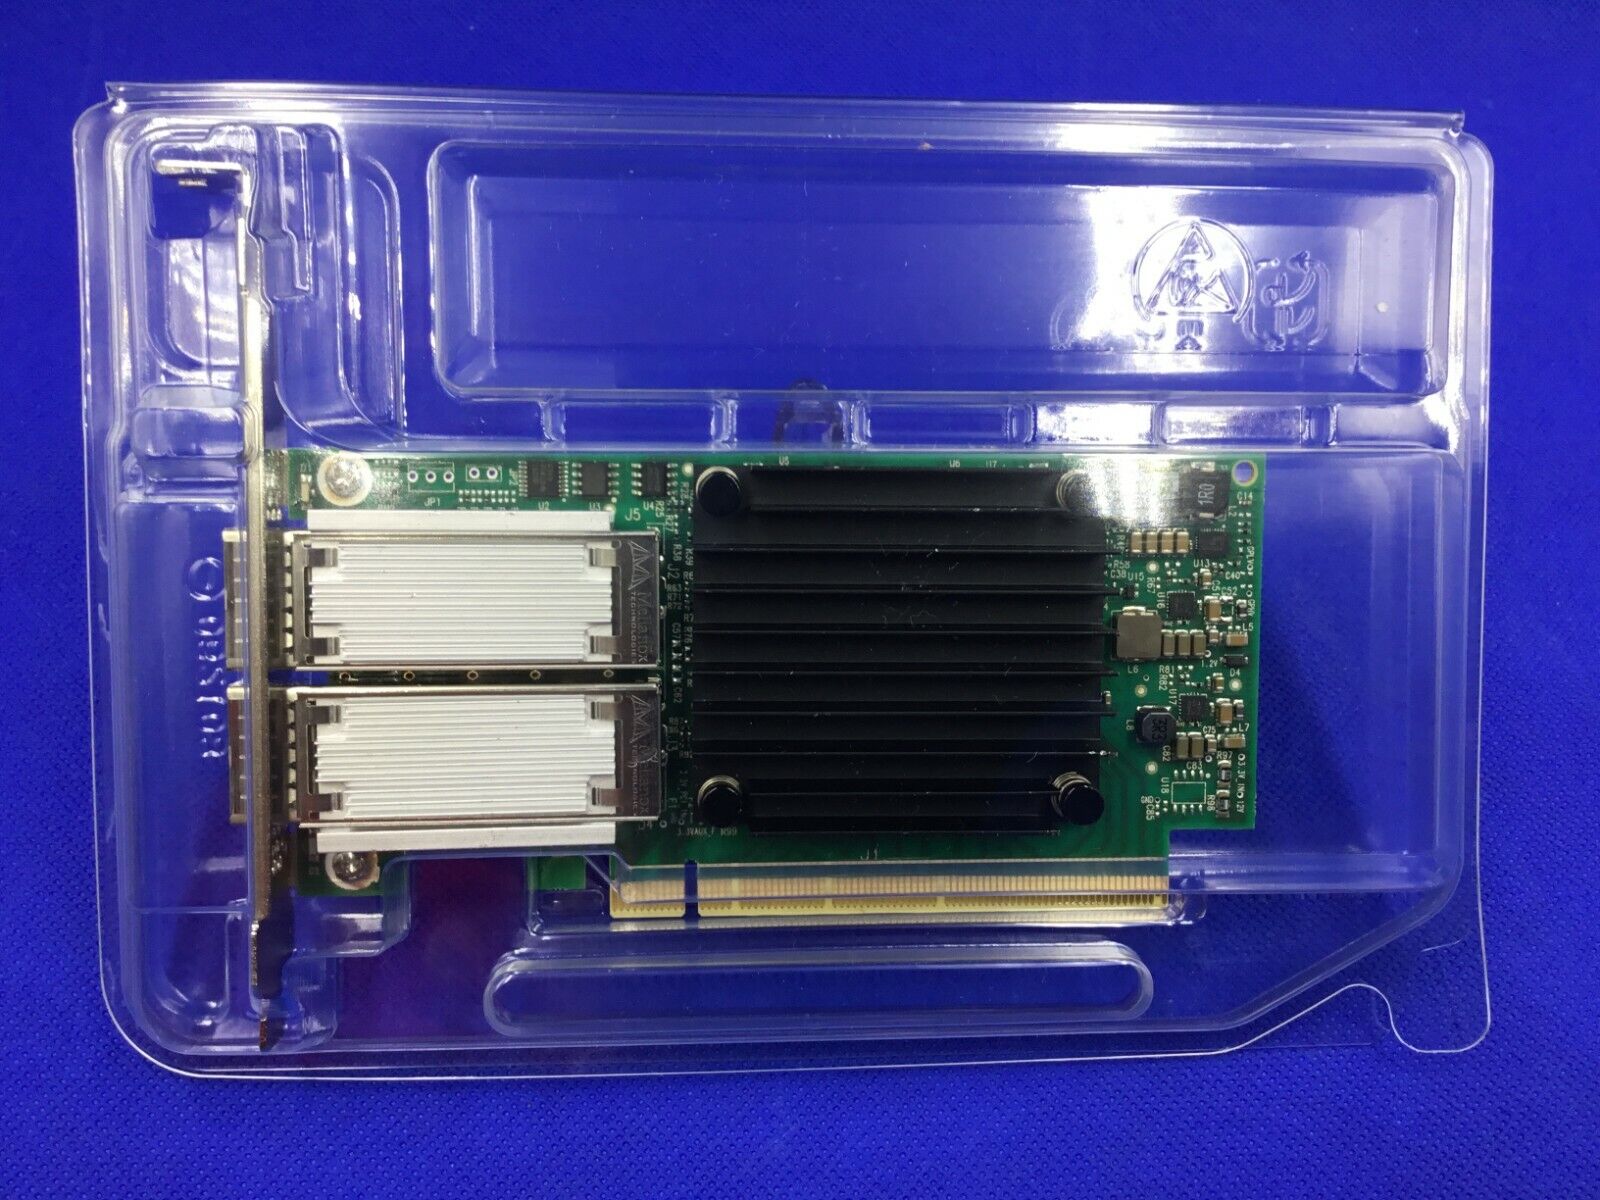 MCX456A-ECAT Mellanox ConnectX-4 VPI EDR IB 100GbE QSFP28 Dual Port Adapter